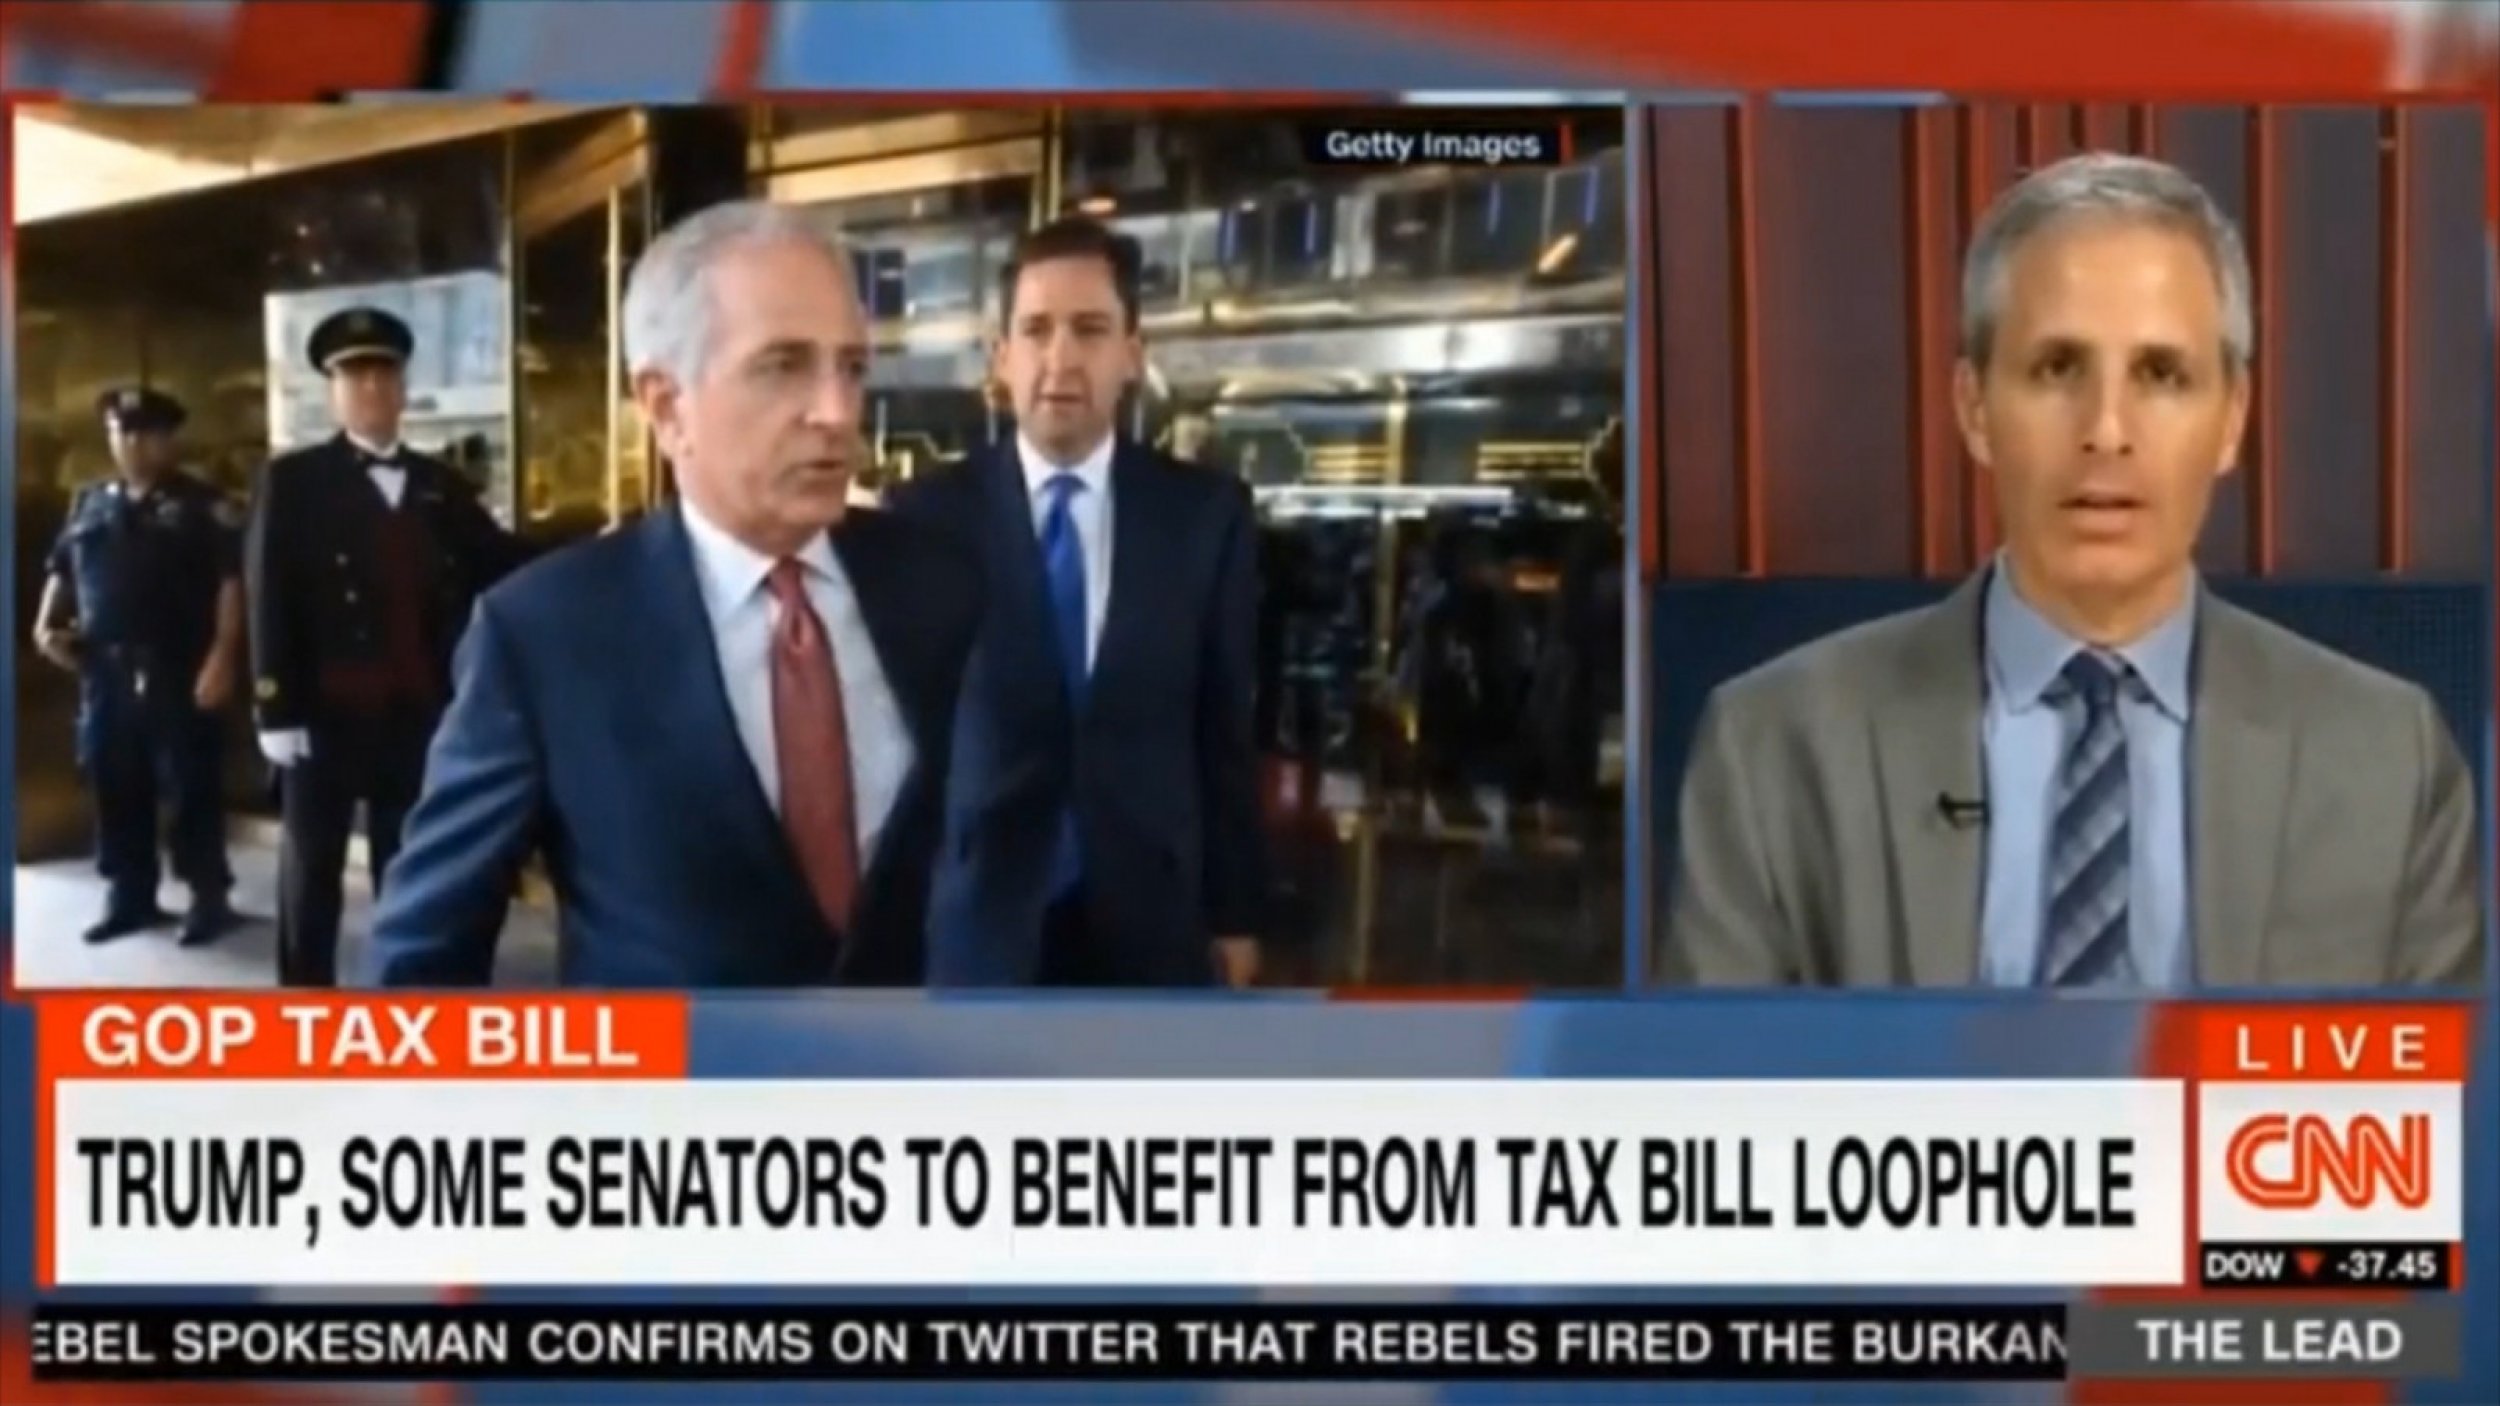 Journalist David Sirota Tells CNN Why Republican Senator Bob Corker Likely Switched His Tax Bill Vote